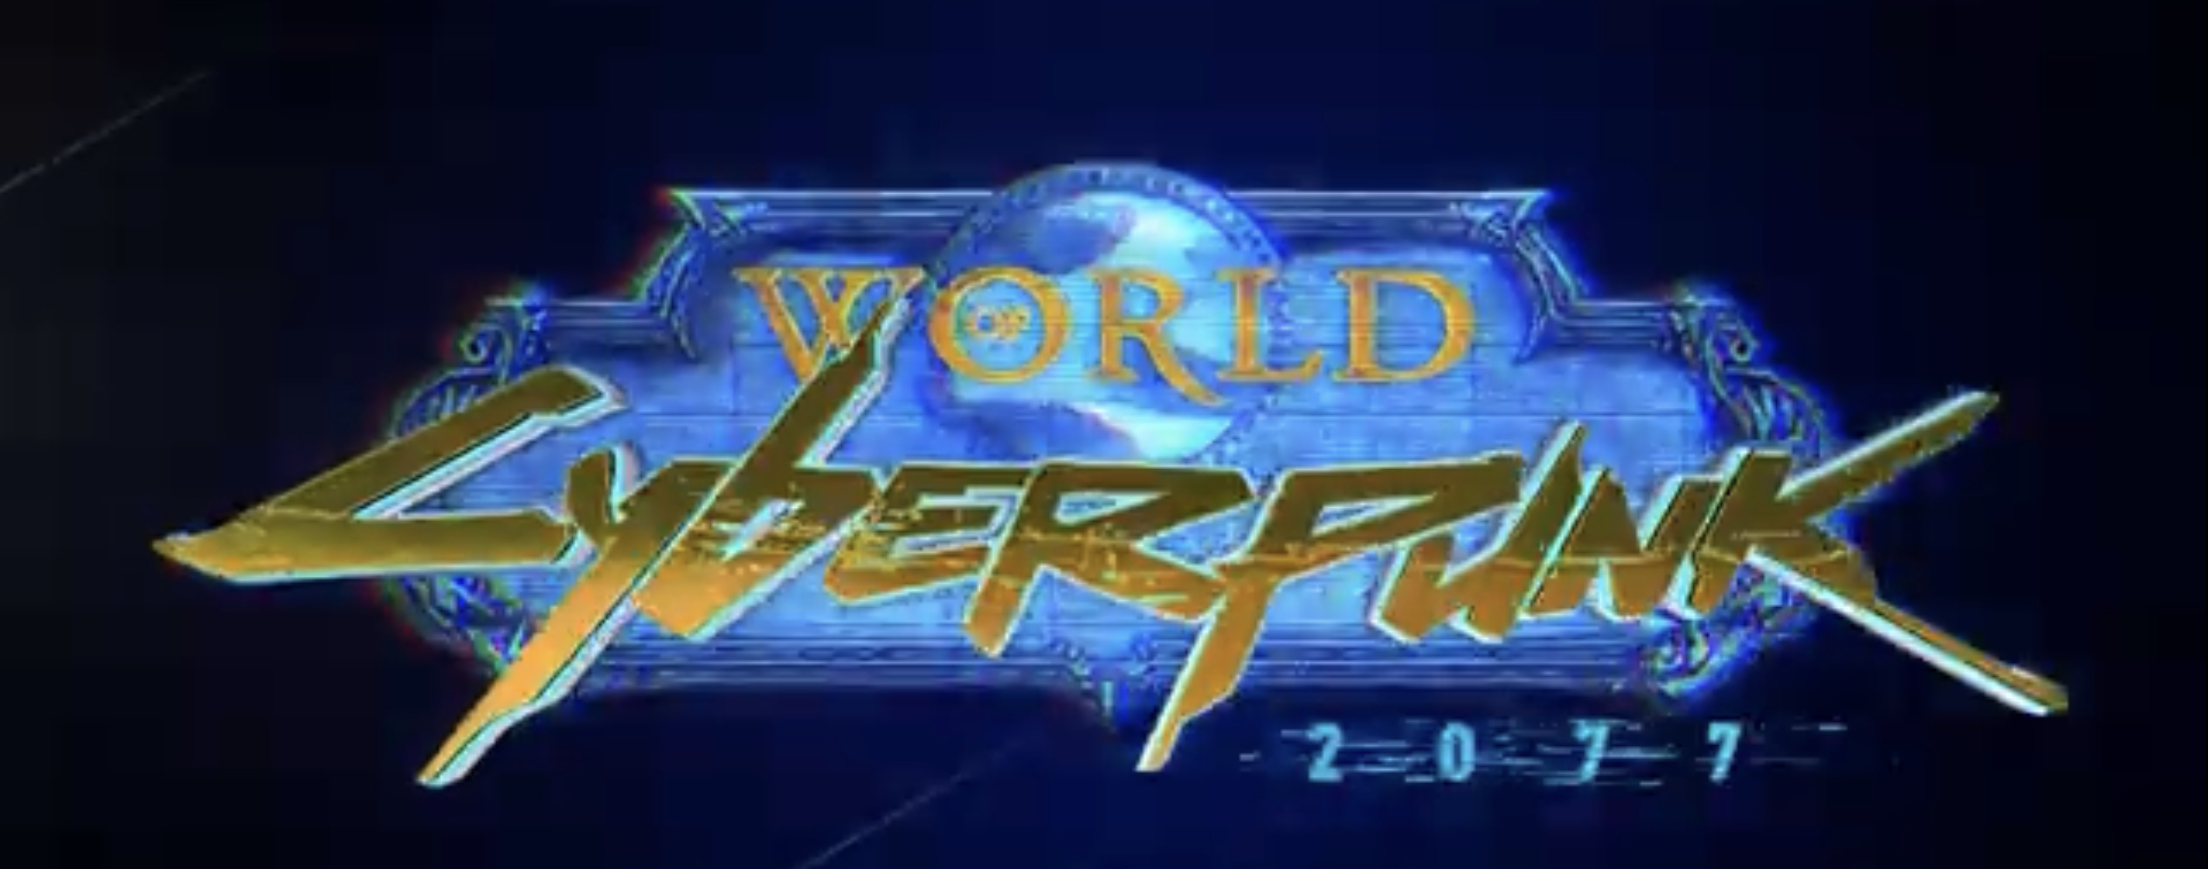 World of Warcraft, Cyberpunk 2077